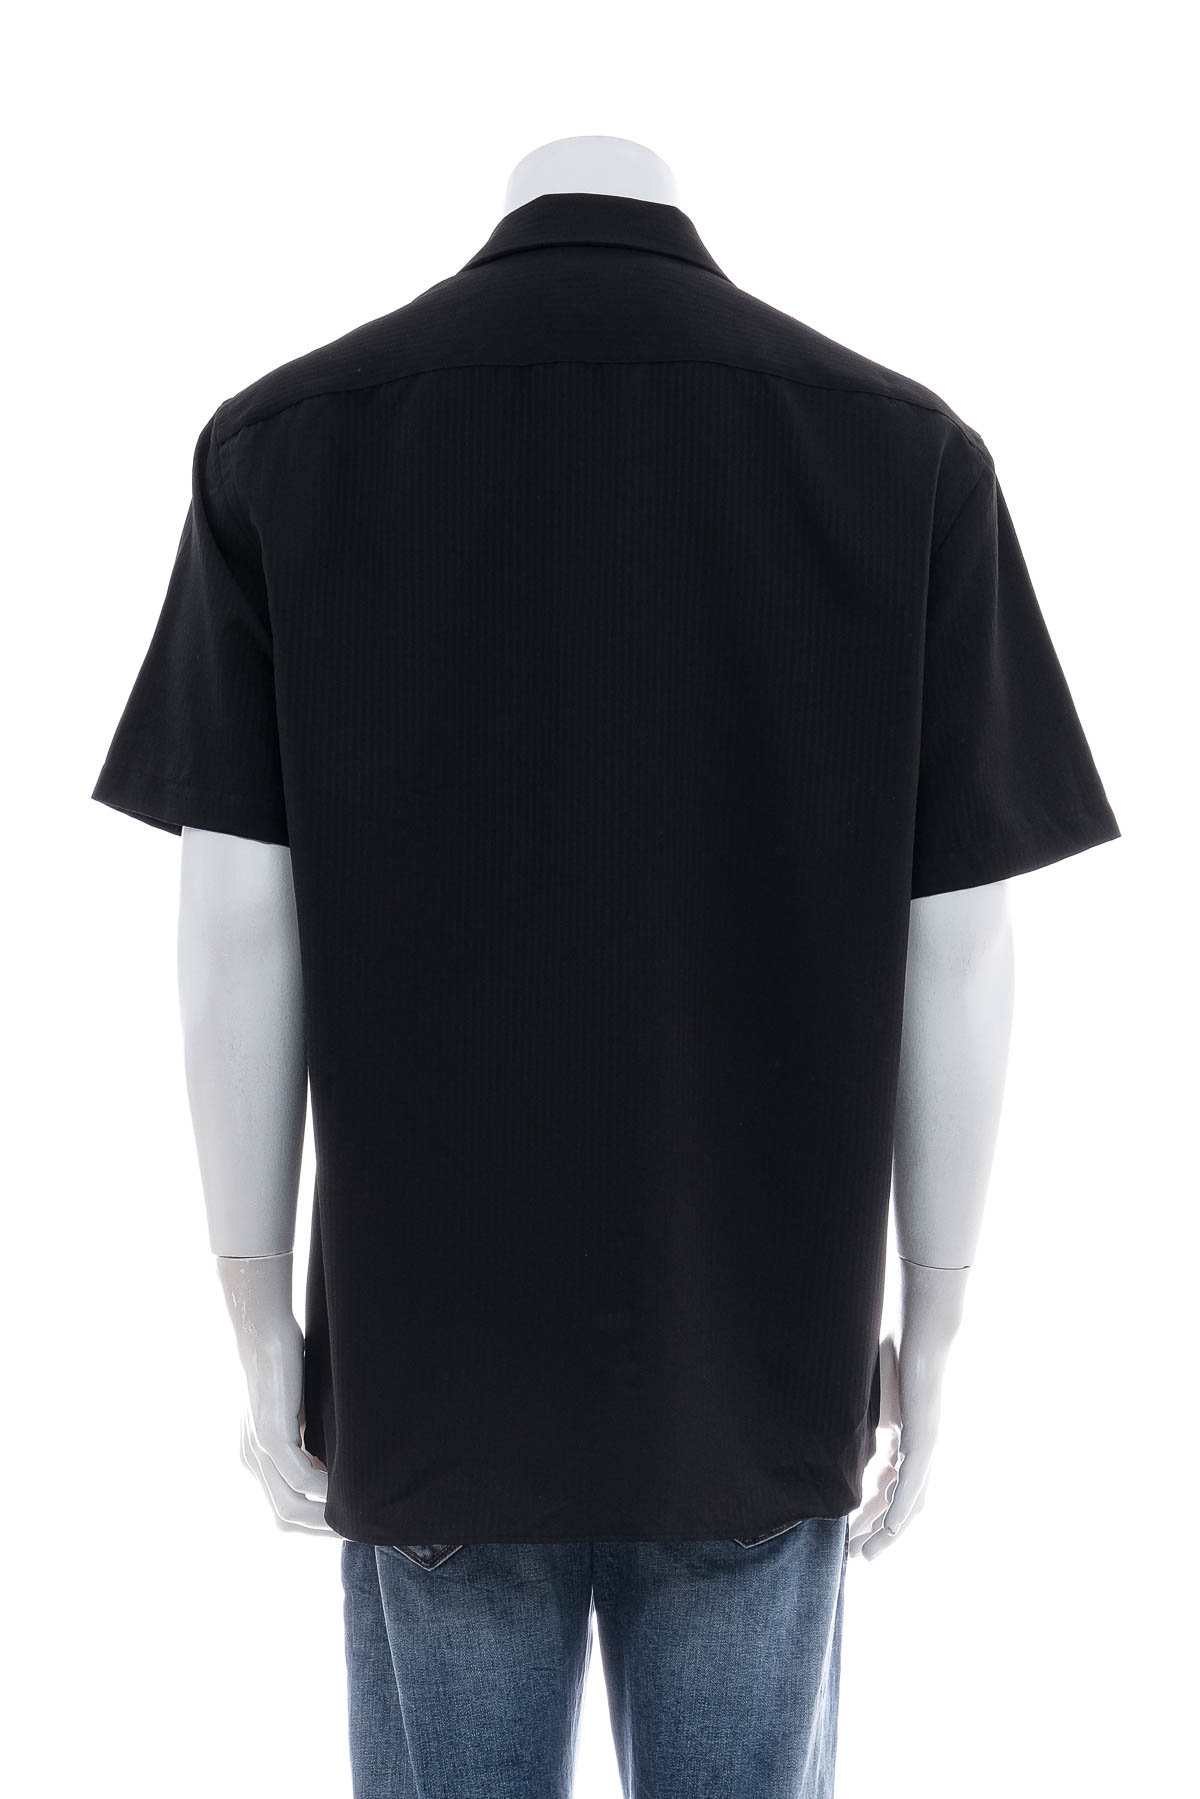 Ανδρικό πουκάμισο - LOWES - 1